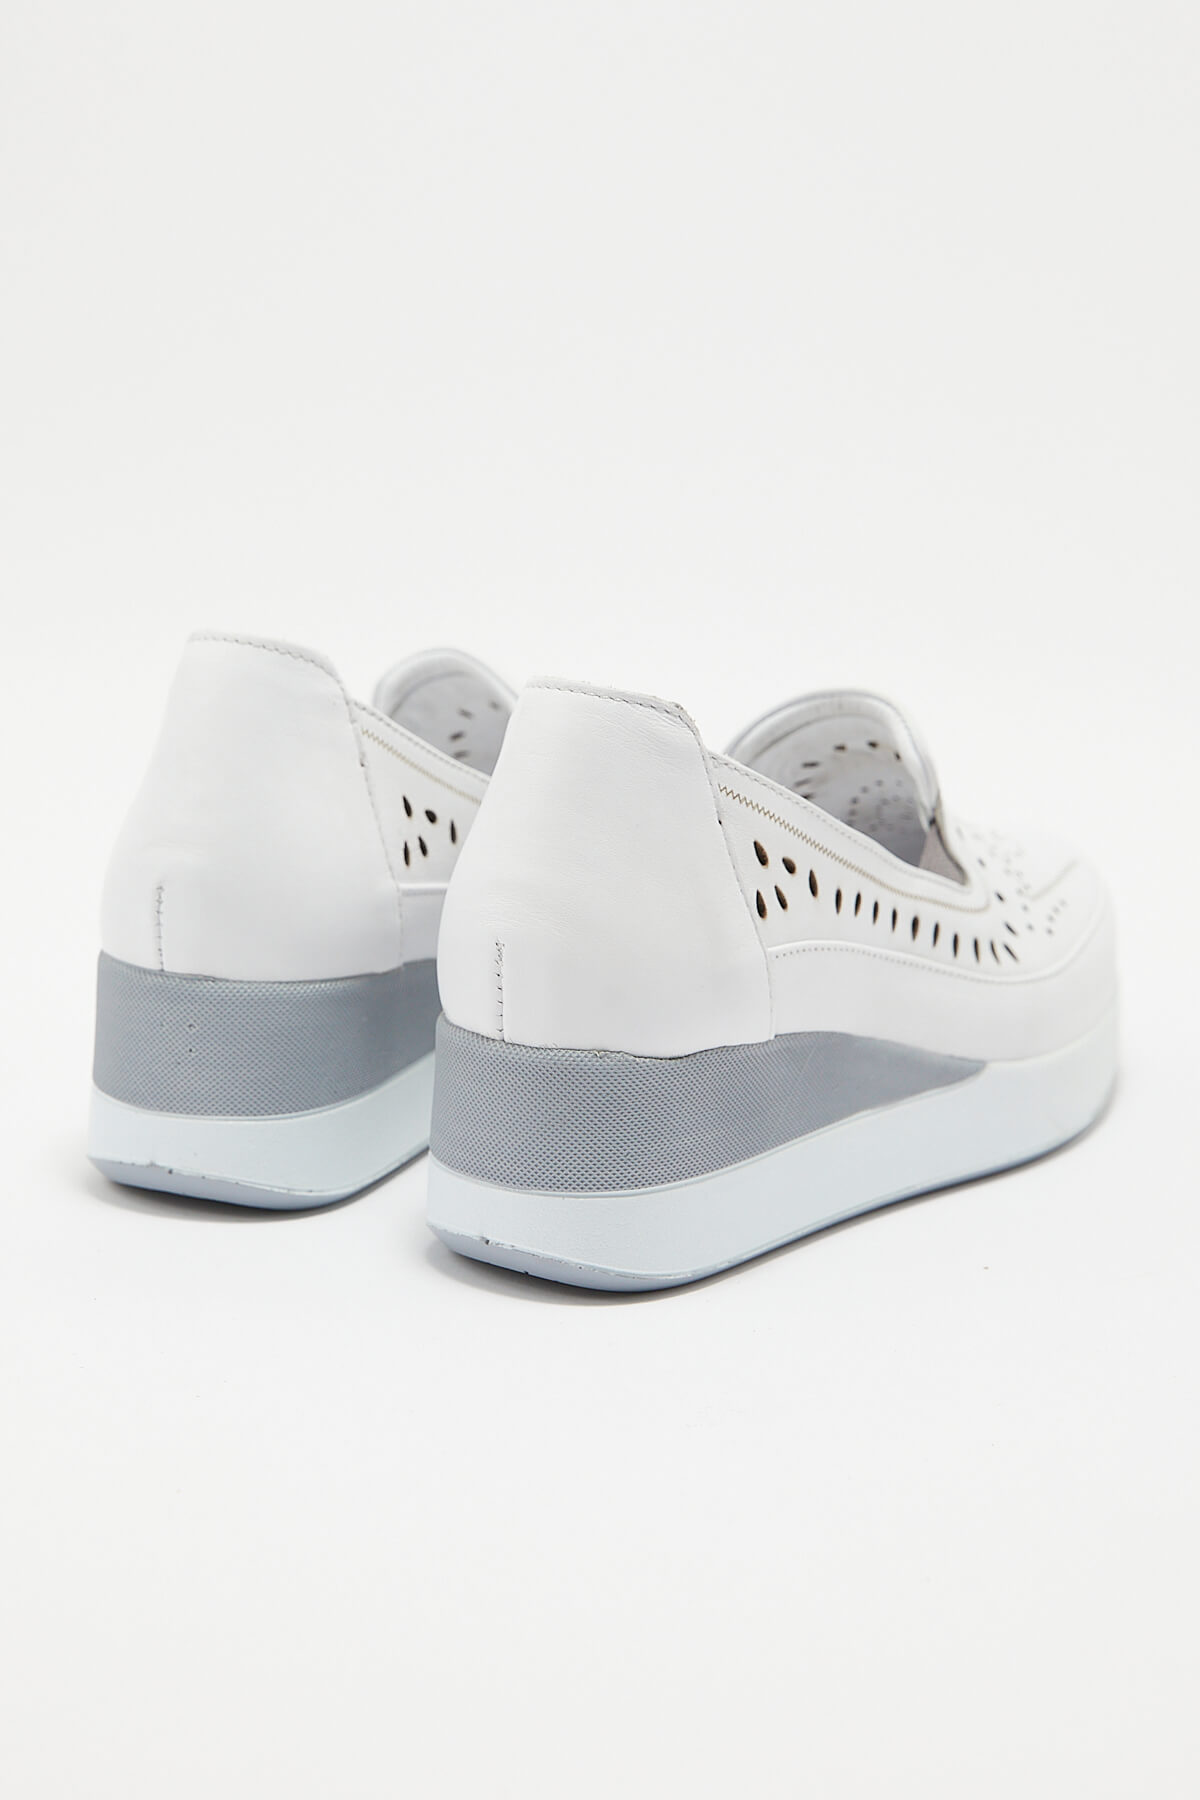 Kadın Airflow Deri Ayakkabı Beyaz 2211701Y - Thumbnail